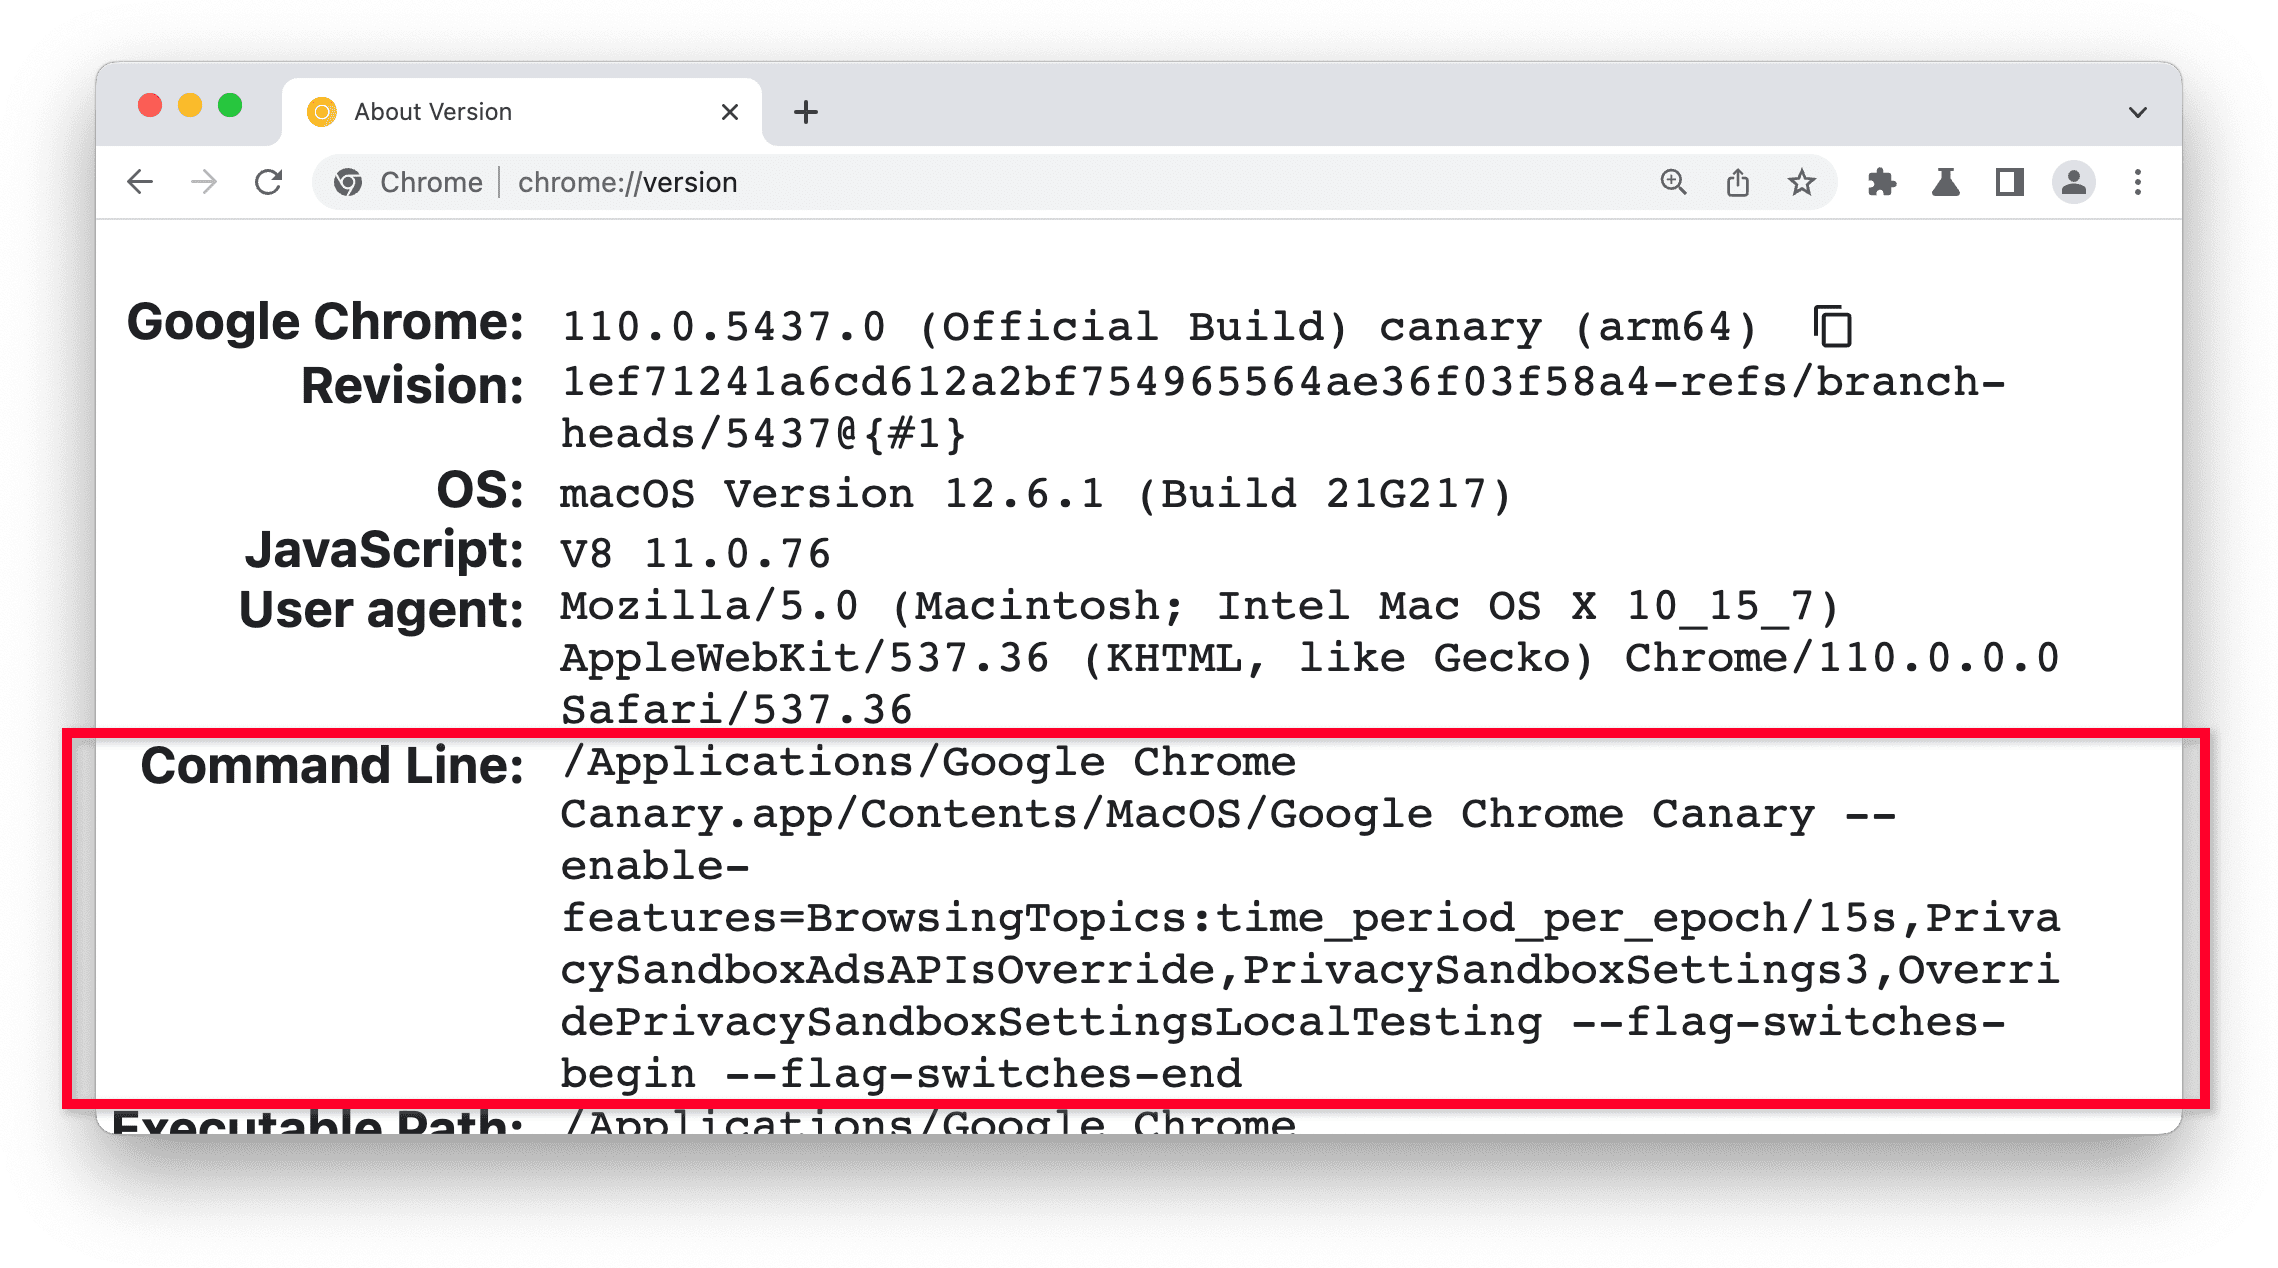 página chrome://version en Chrome Canary, en la sección Línea de comandos destacada.